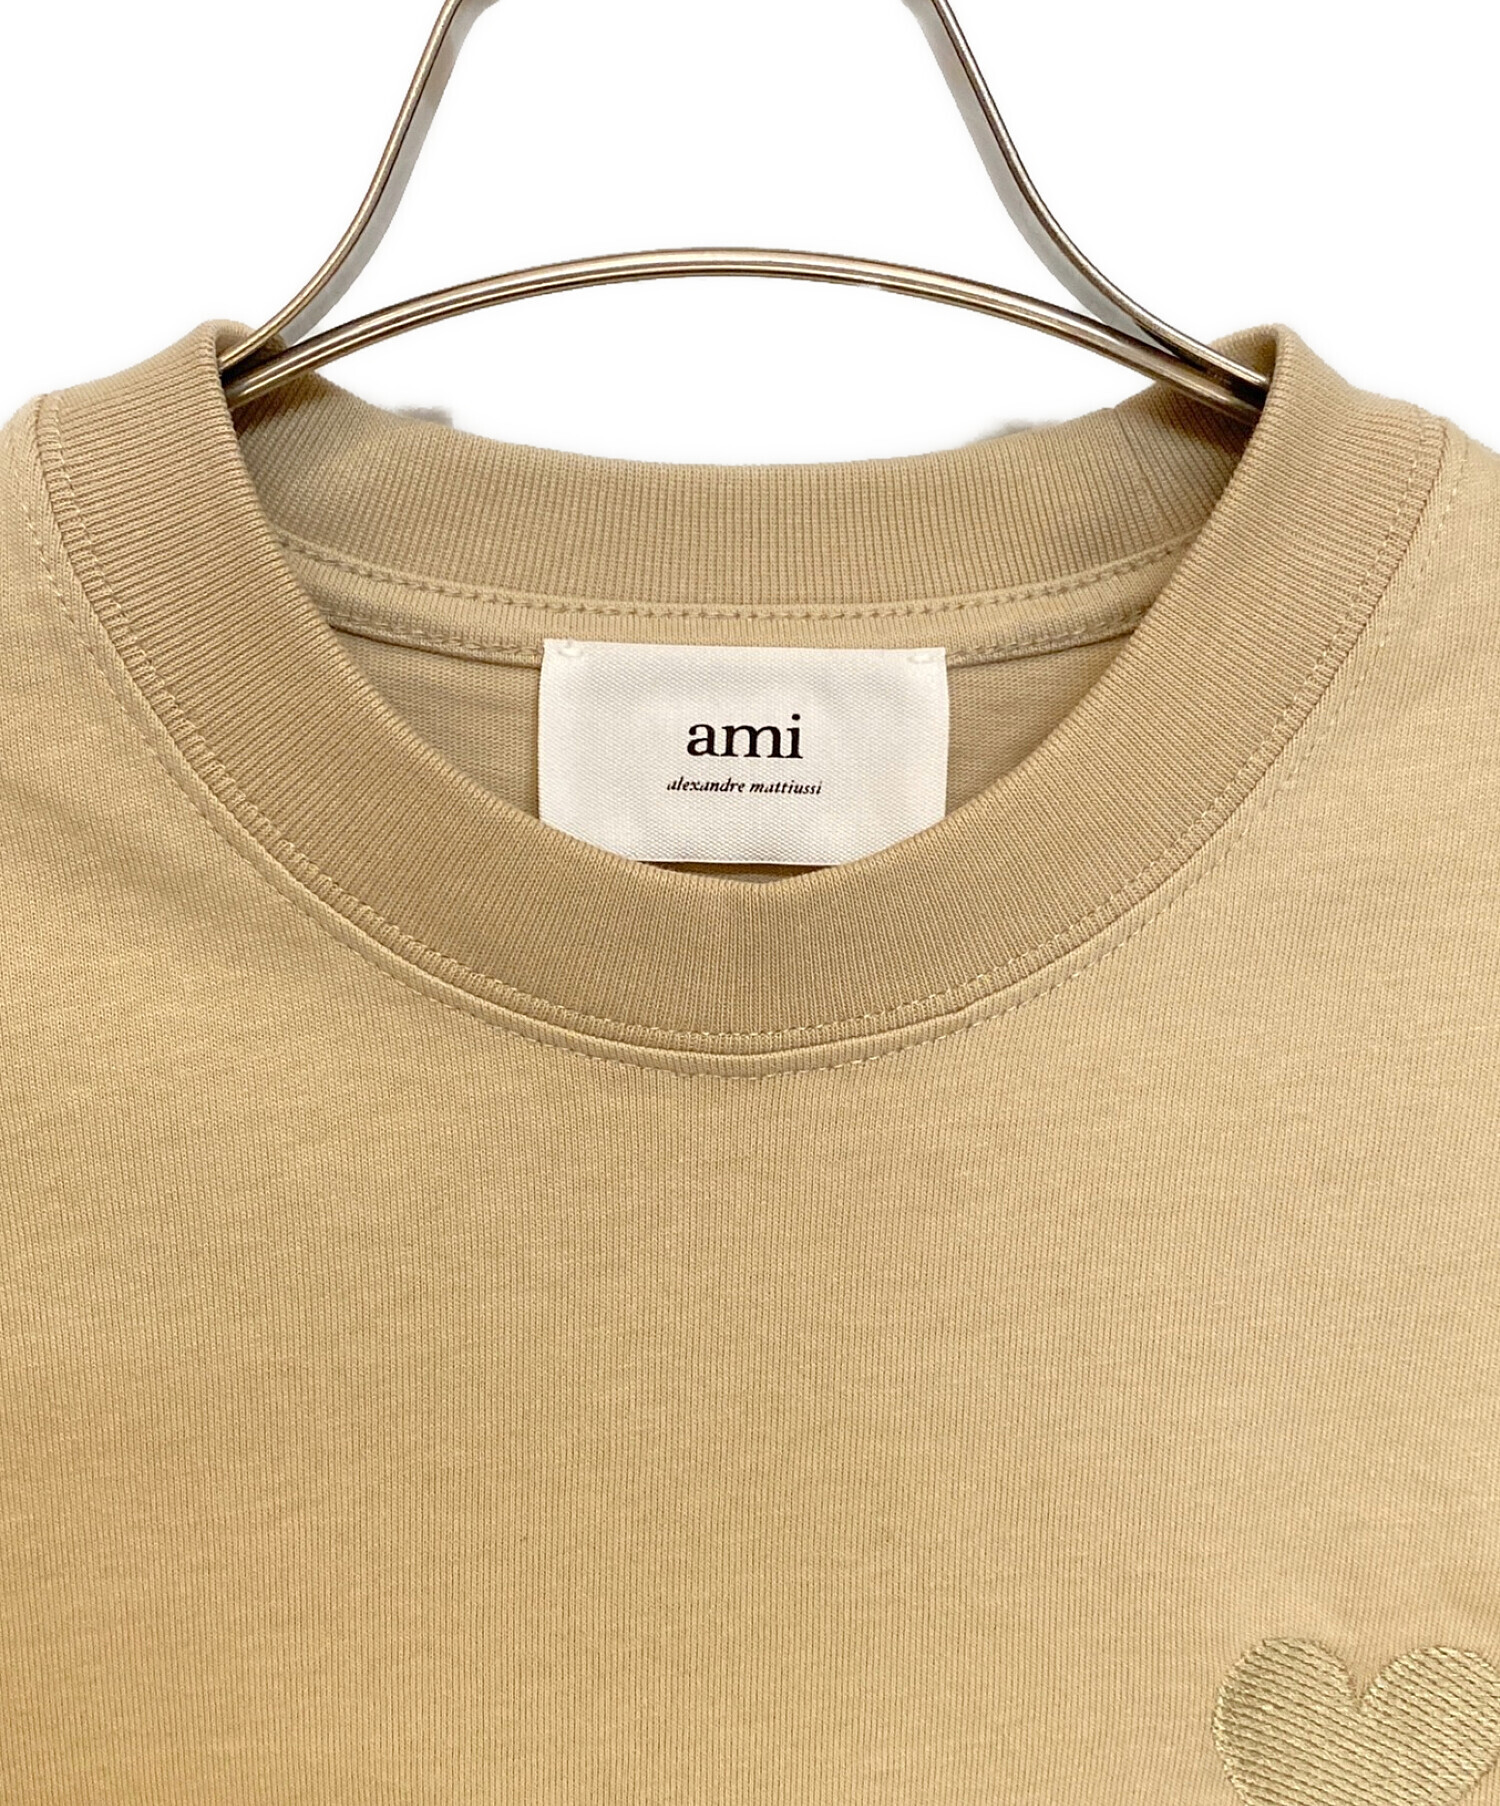 AMI Alexandre Mattiussi (アミ アレクサンドル マテュッシ) ハートロゴ刺繍Tシャツ ベージュ サイズ:XS 未使用品